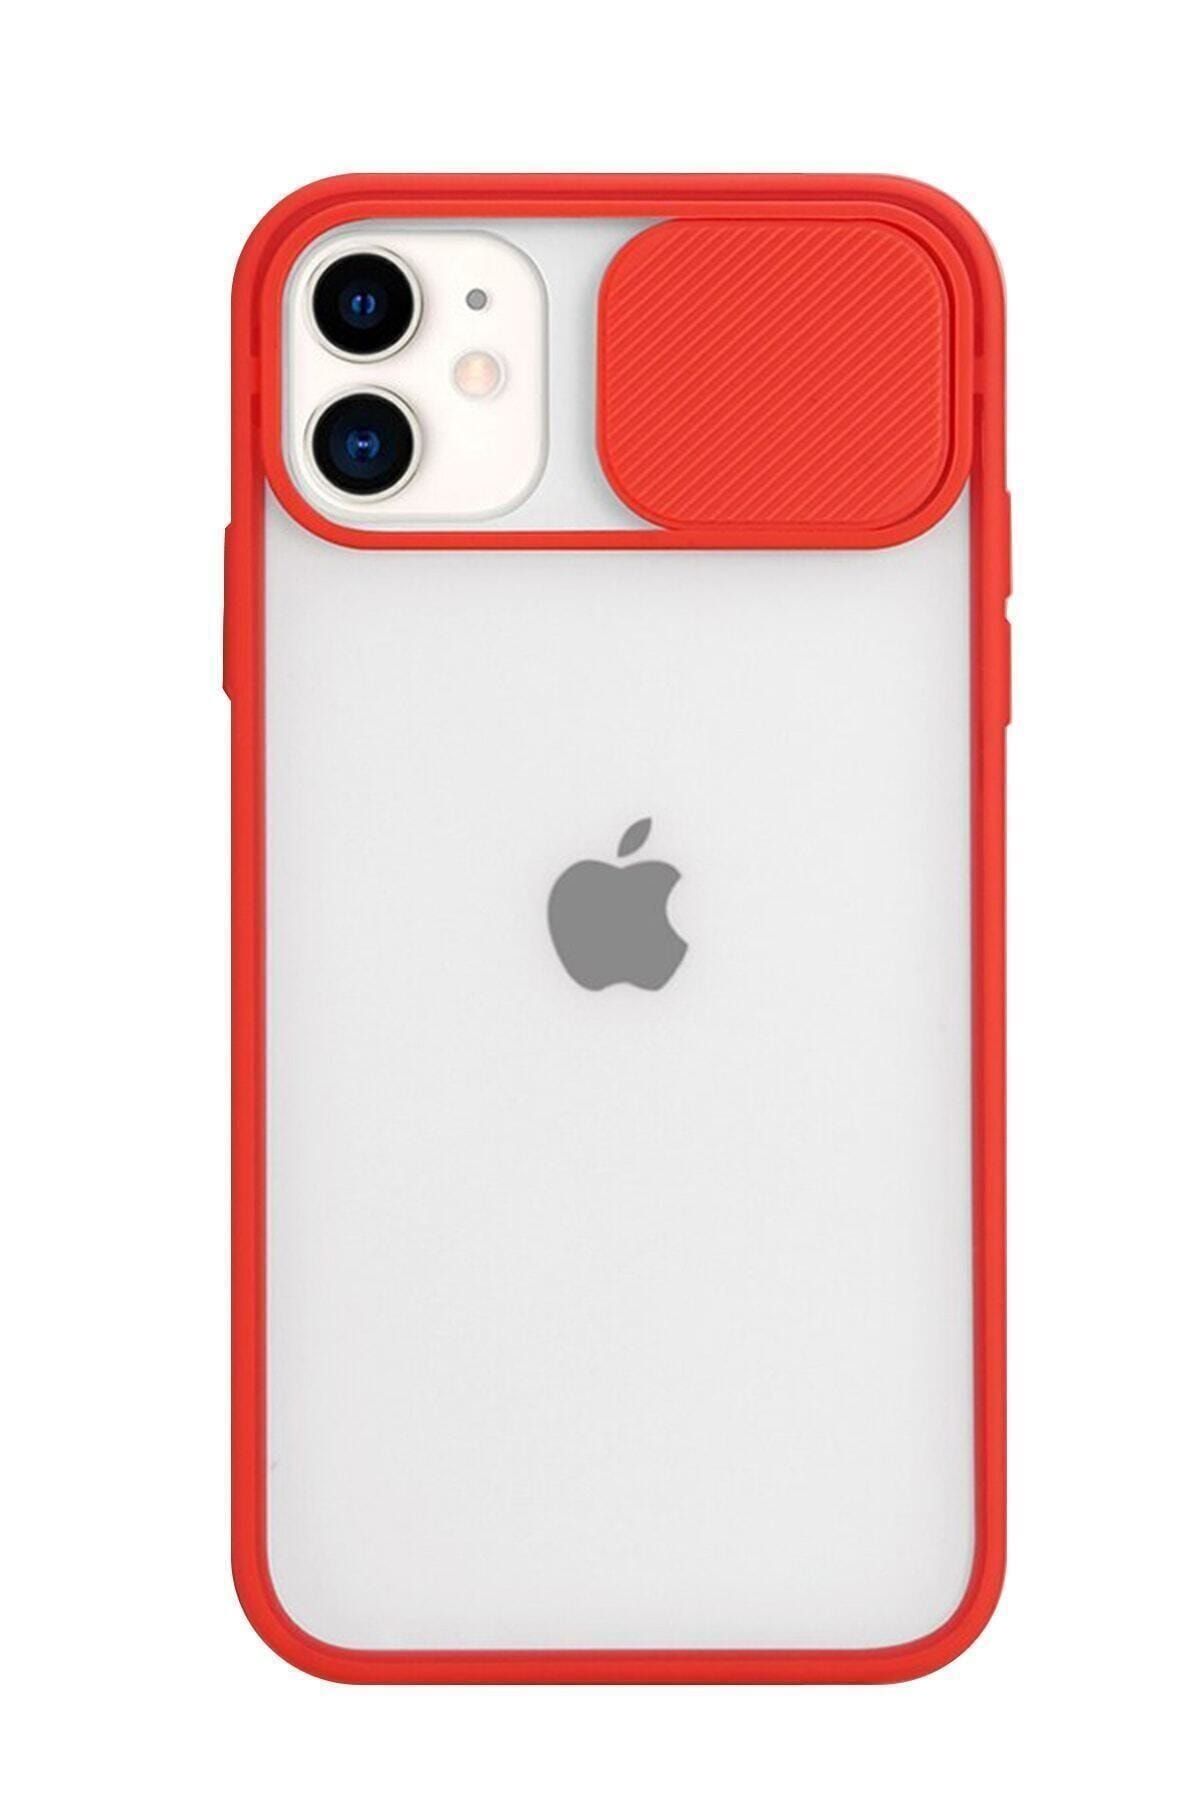 Mopal Iphone 11 Uyumlu Kamera Lens Korumalı Kırmızı Kılıf